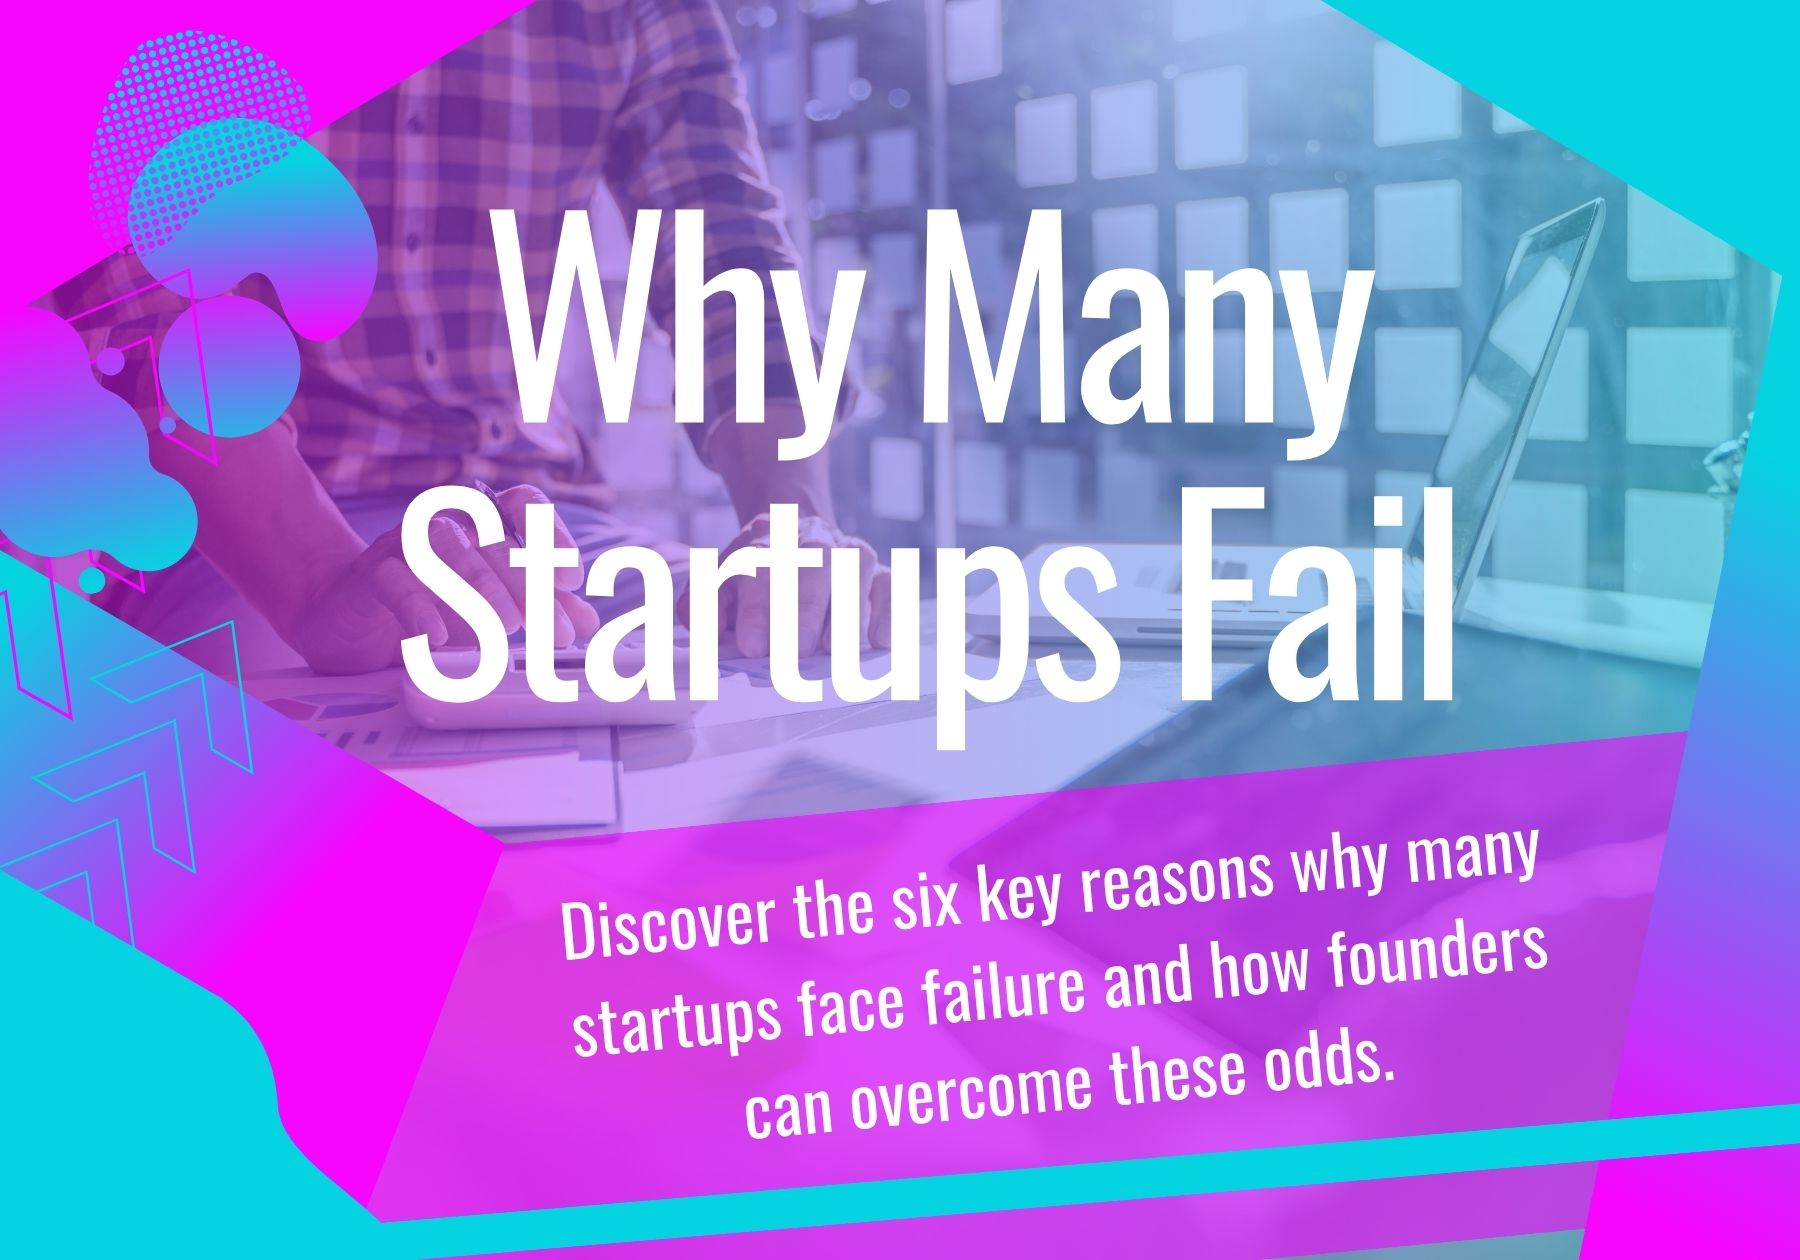 Why Do So Many Startups Fail? 